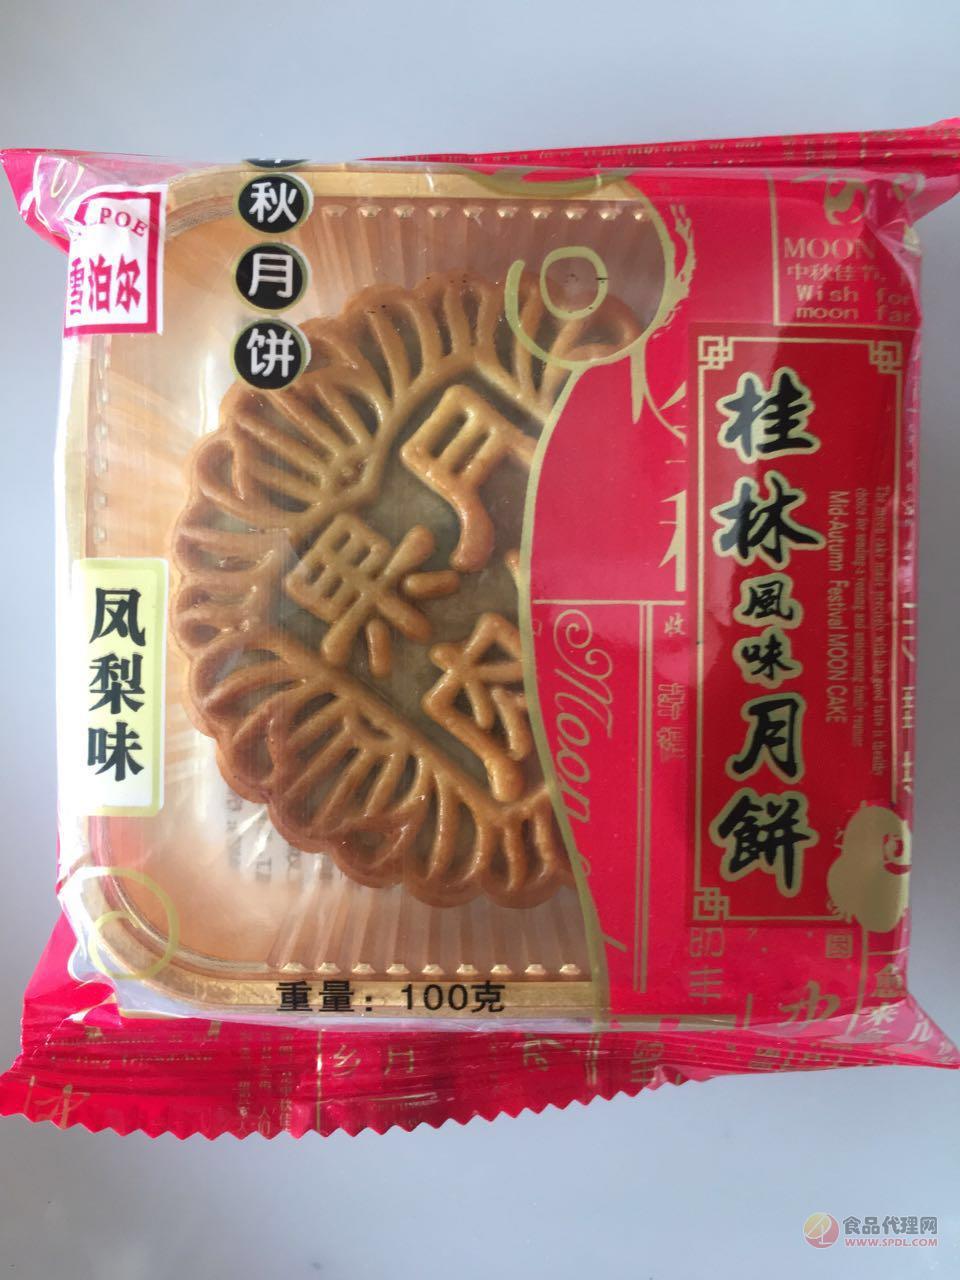 雪泊尔桂林风味月饼凤梨味100g